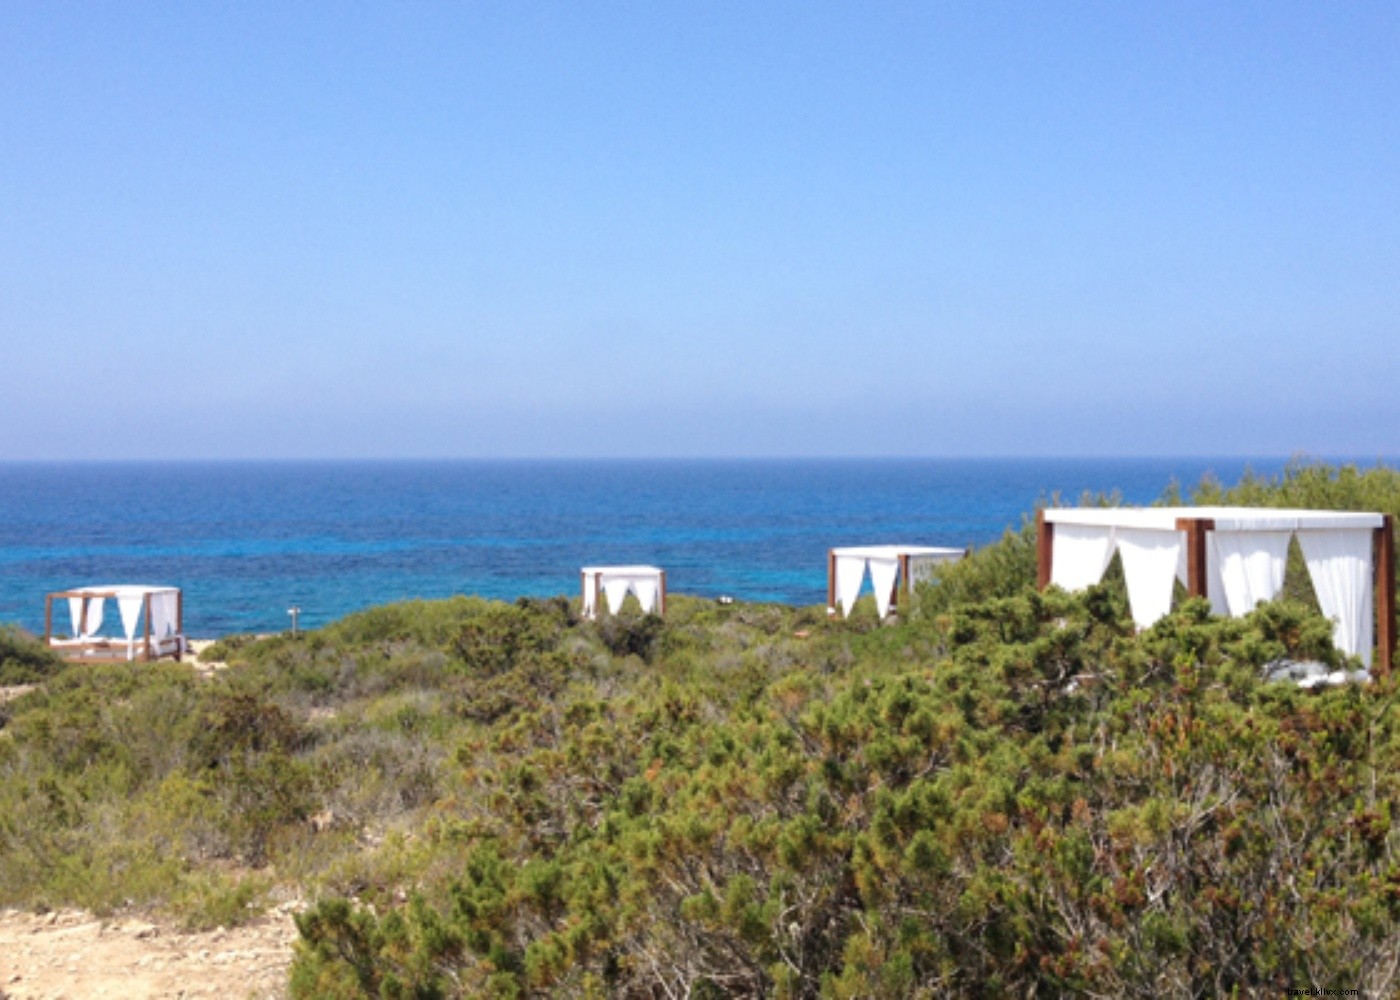 De atardeceres a playas turquesas:la vida en la isla de Formentera 